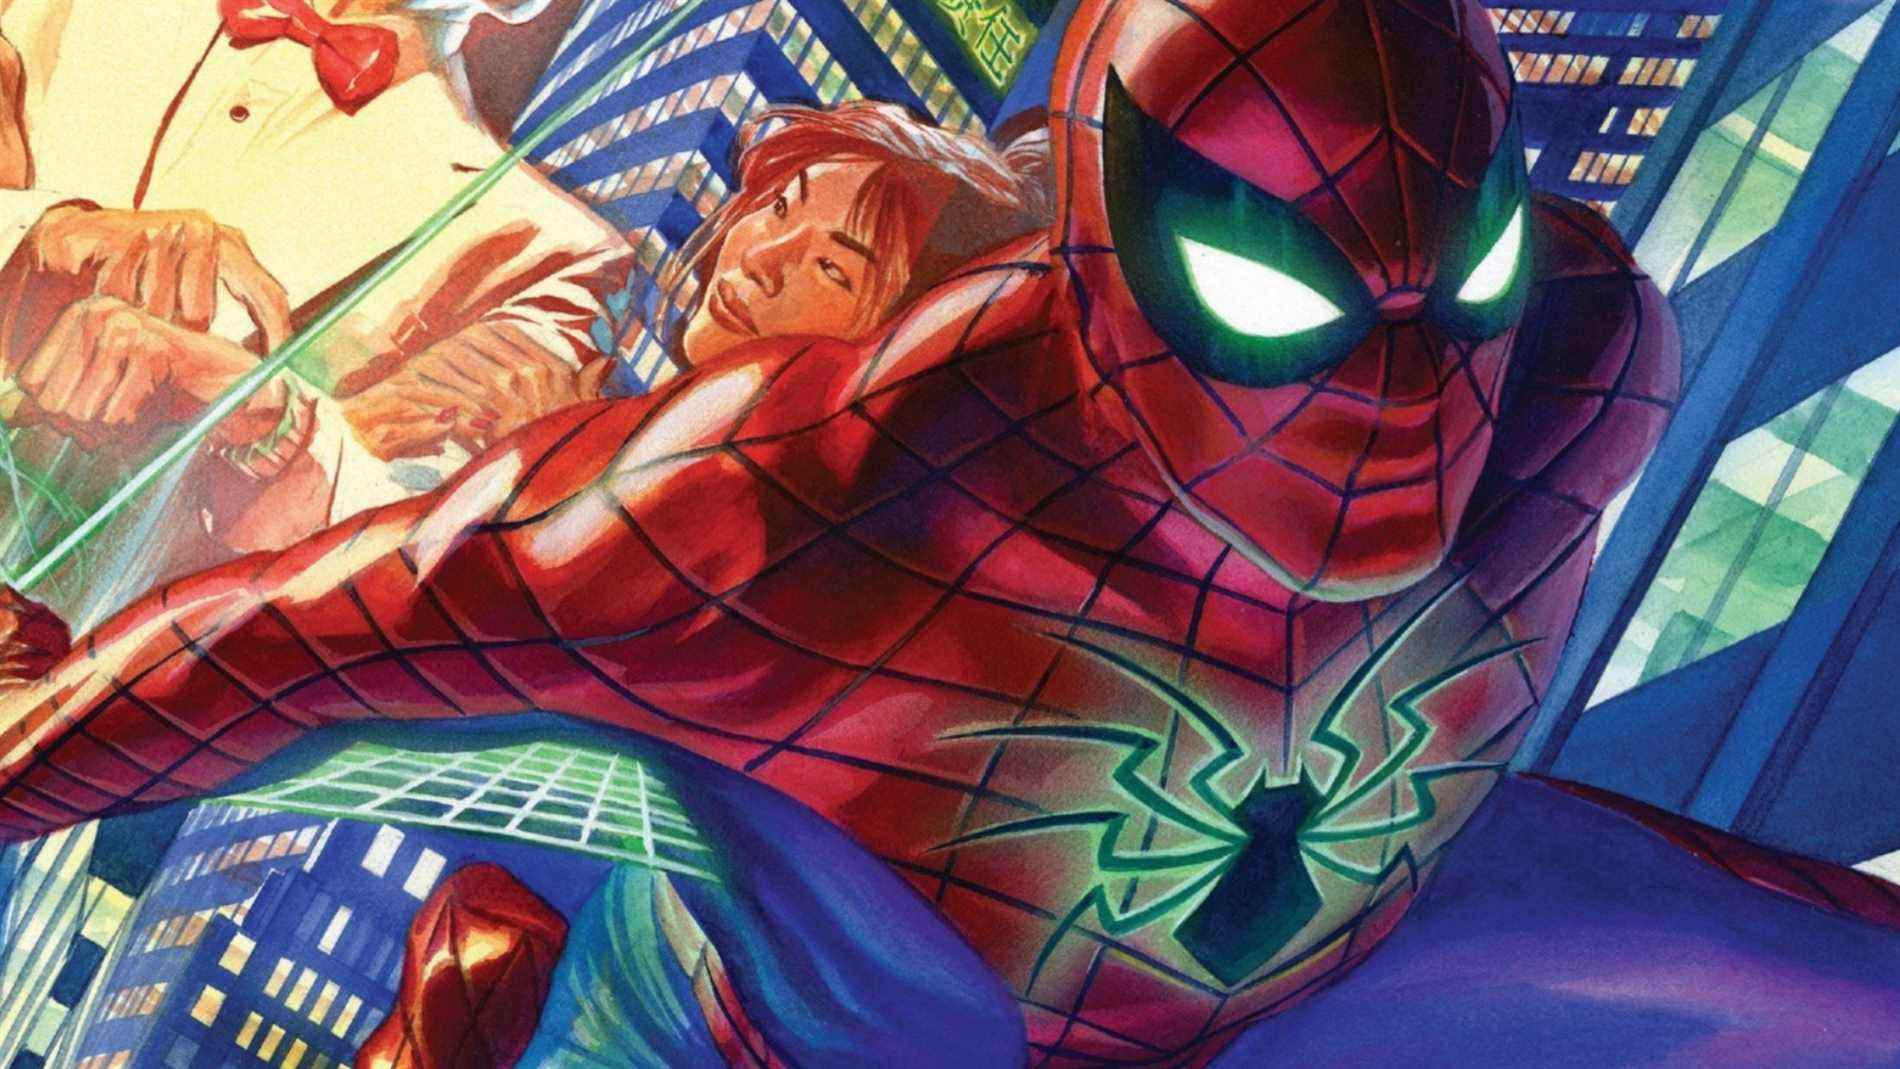 Extrait de couverture de Amazing Spider-Man #1 (2015)